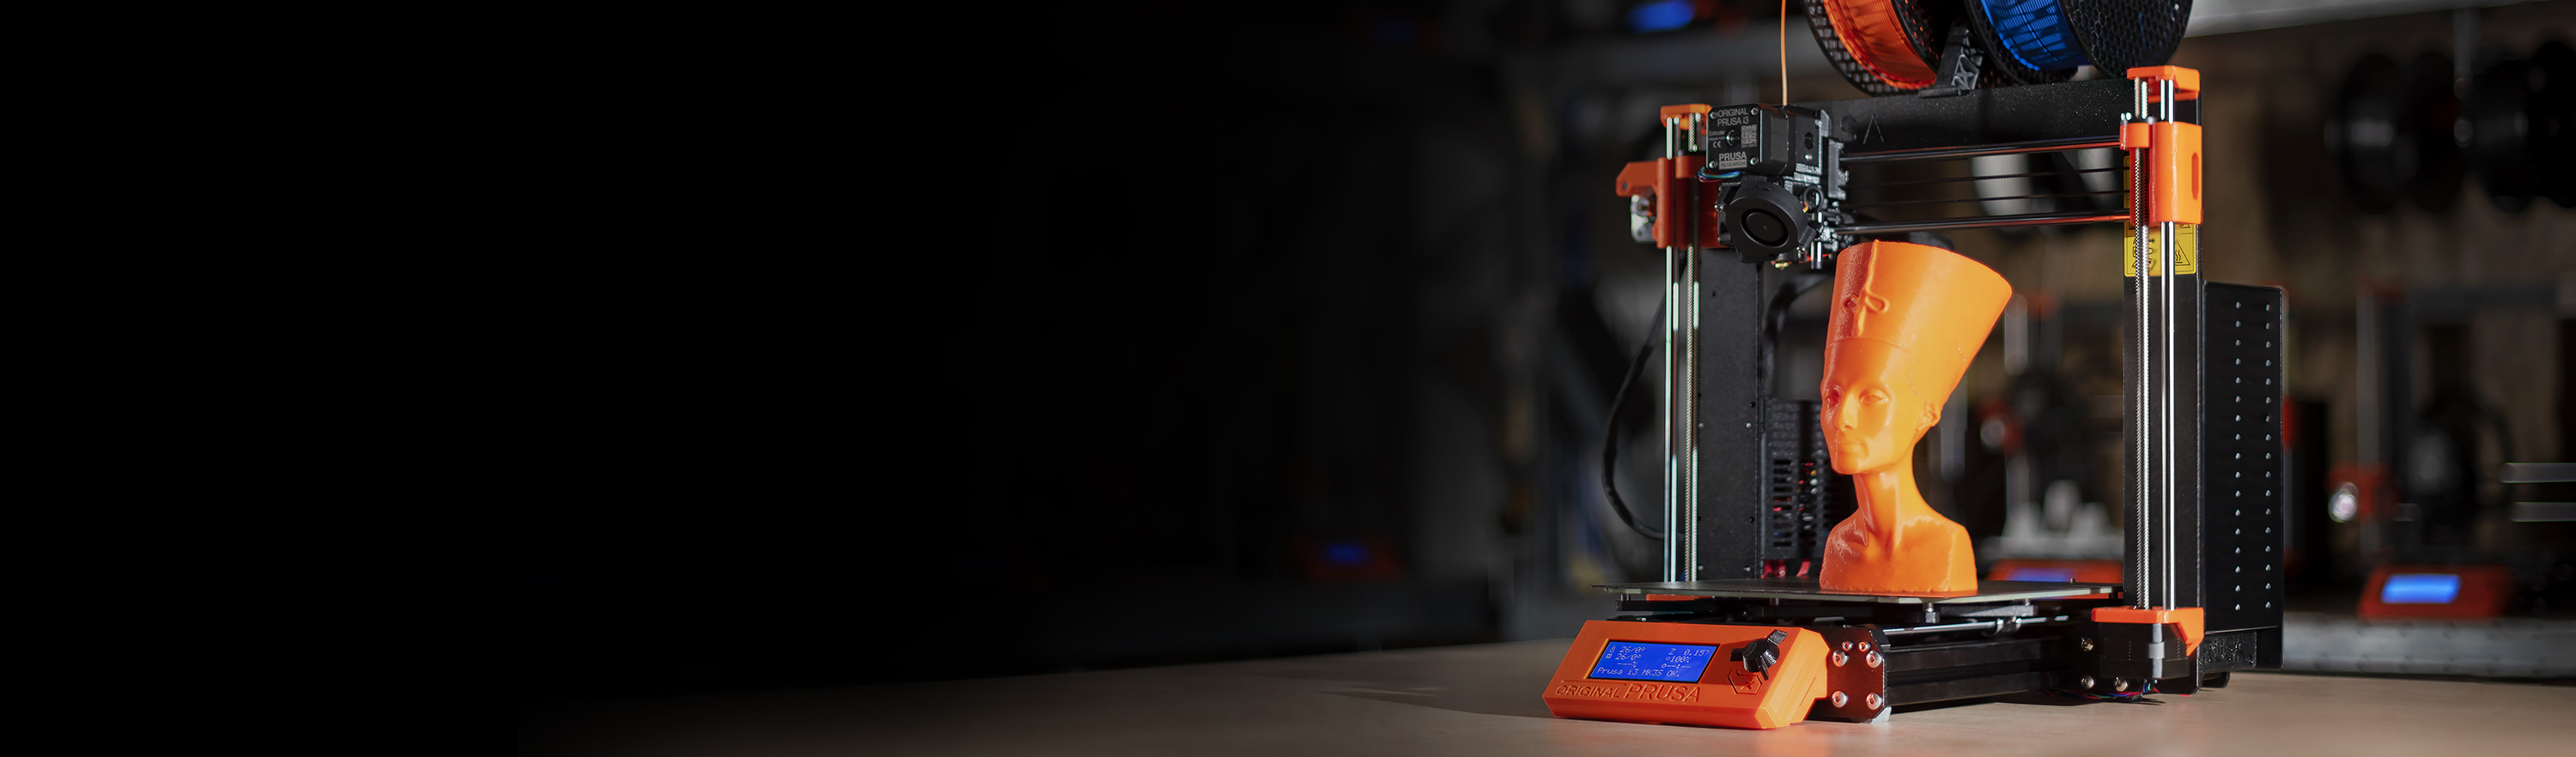 Prusa i3 3d Drucker DIY Kit RepRap Auto Nivellierung mit großen 3D Druck Größe Hohe Genauigkeit und Stabilität Beheiztes Bett LCD Display schwarz 